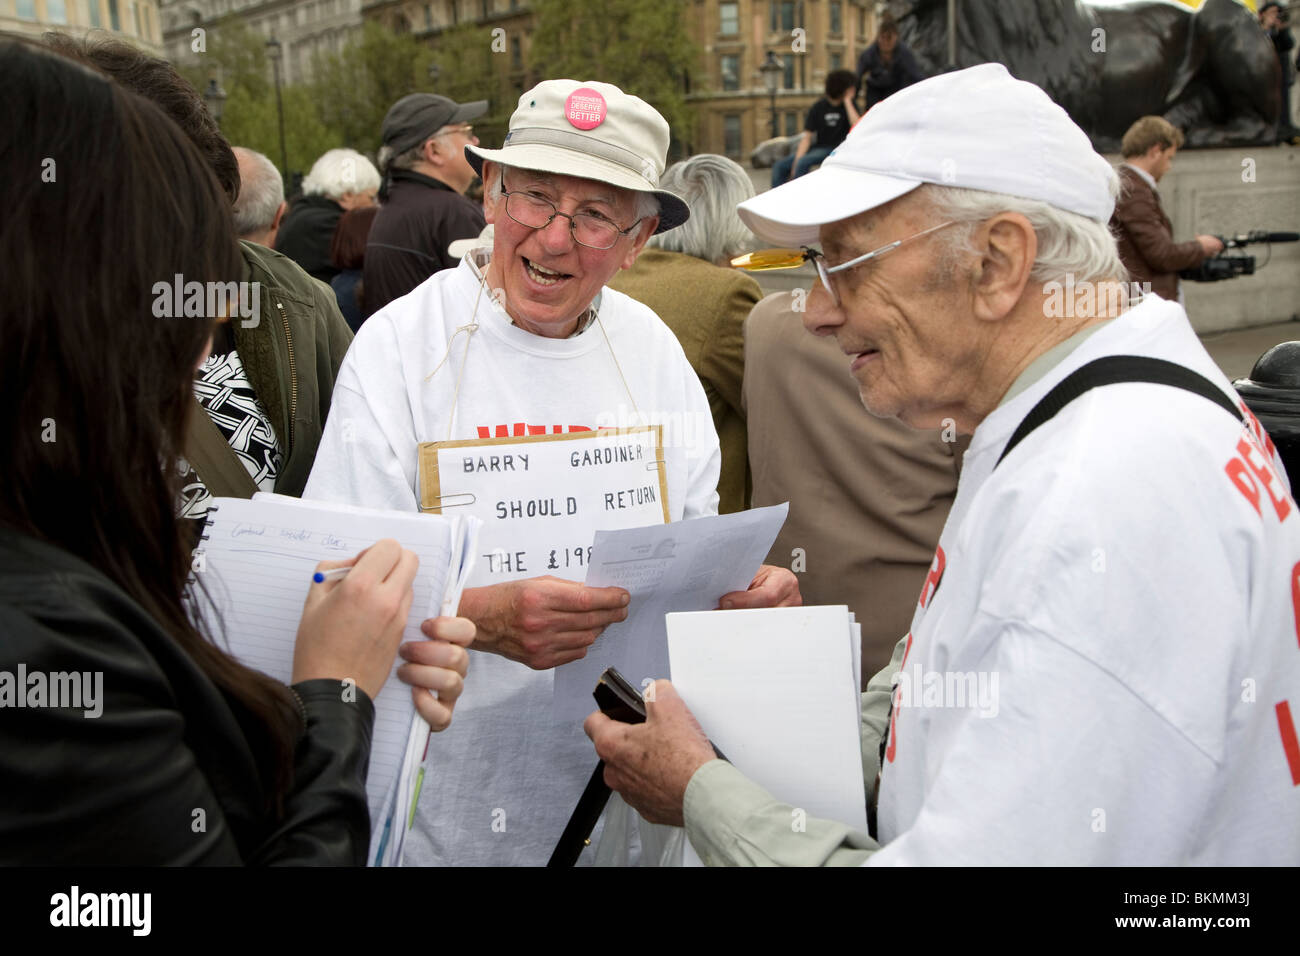 Mai 24 mars et rassemblement à Trafalgar Square, 1er mai 2010 pensionné protester contre les pensions de l'état bas Banque D'Images